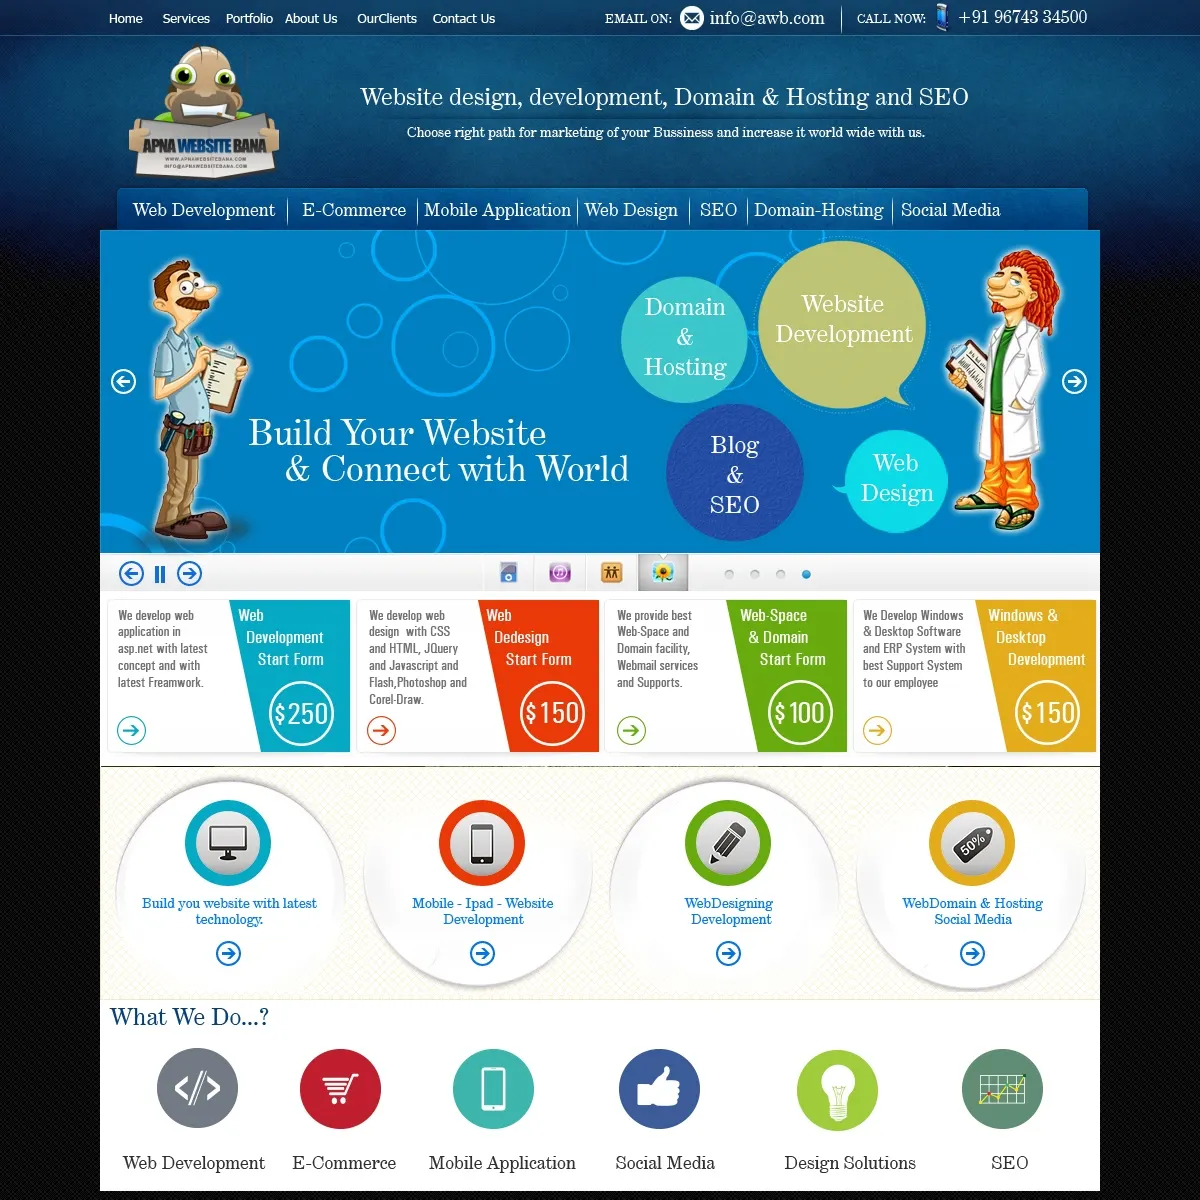 Templat Desain Situs Web Wordpress untuk Bisnis, Mendesain Web CMS, Layanan Pengembangan Toko Online Yang Responsif